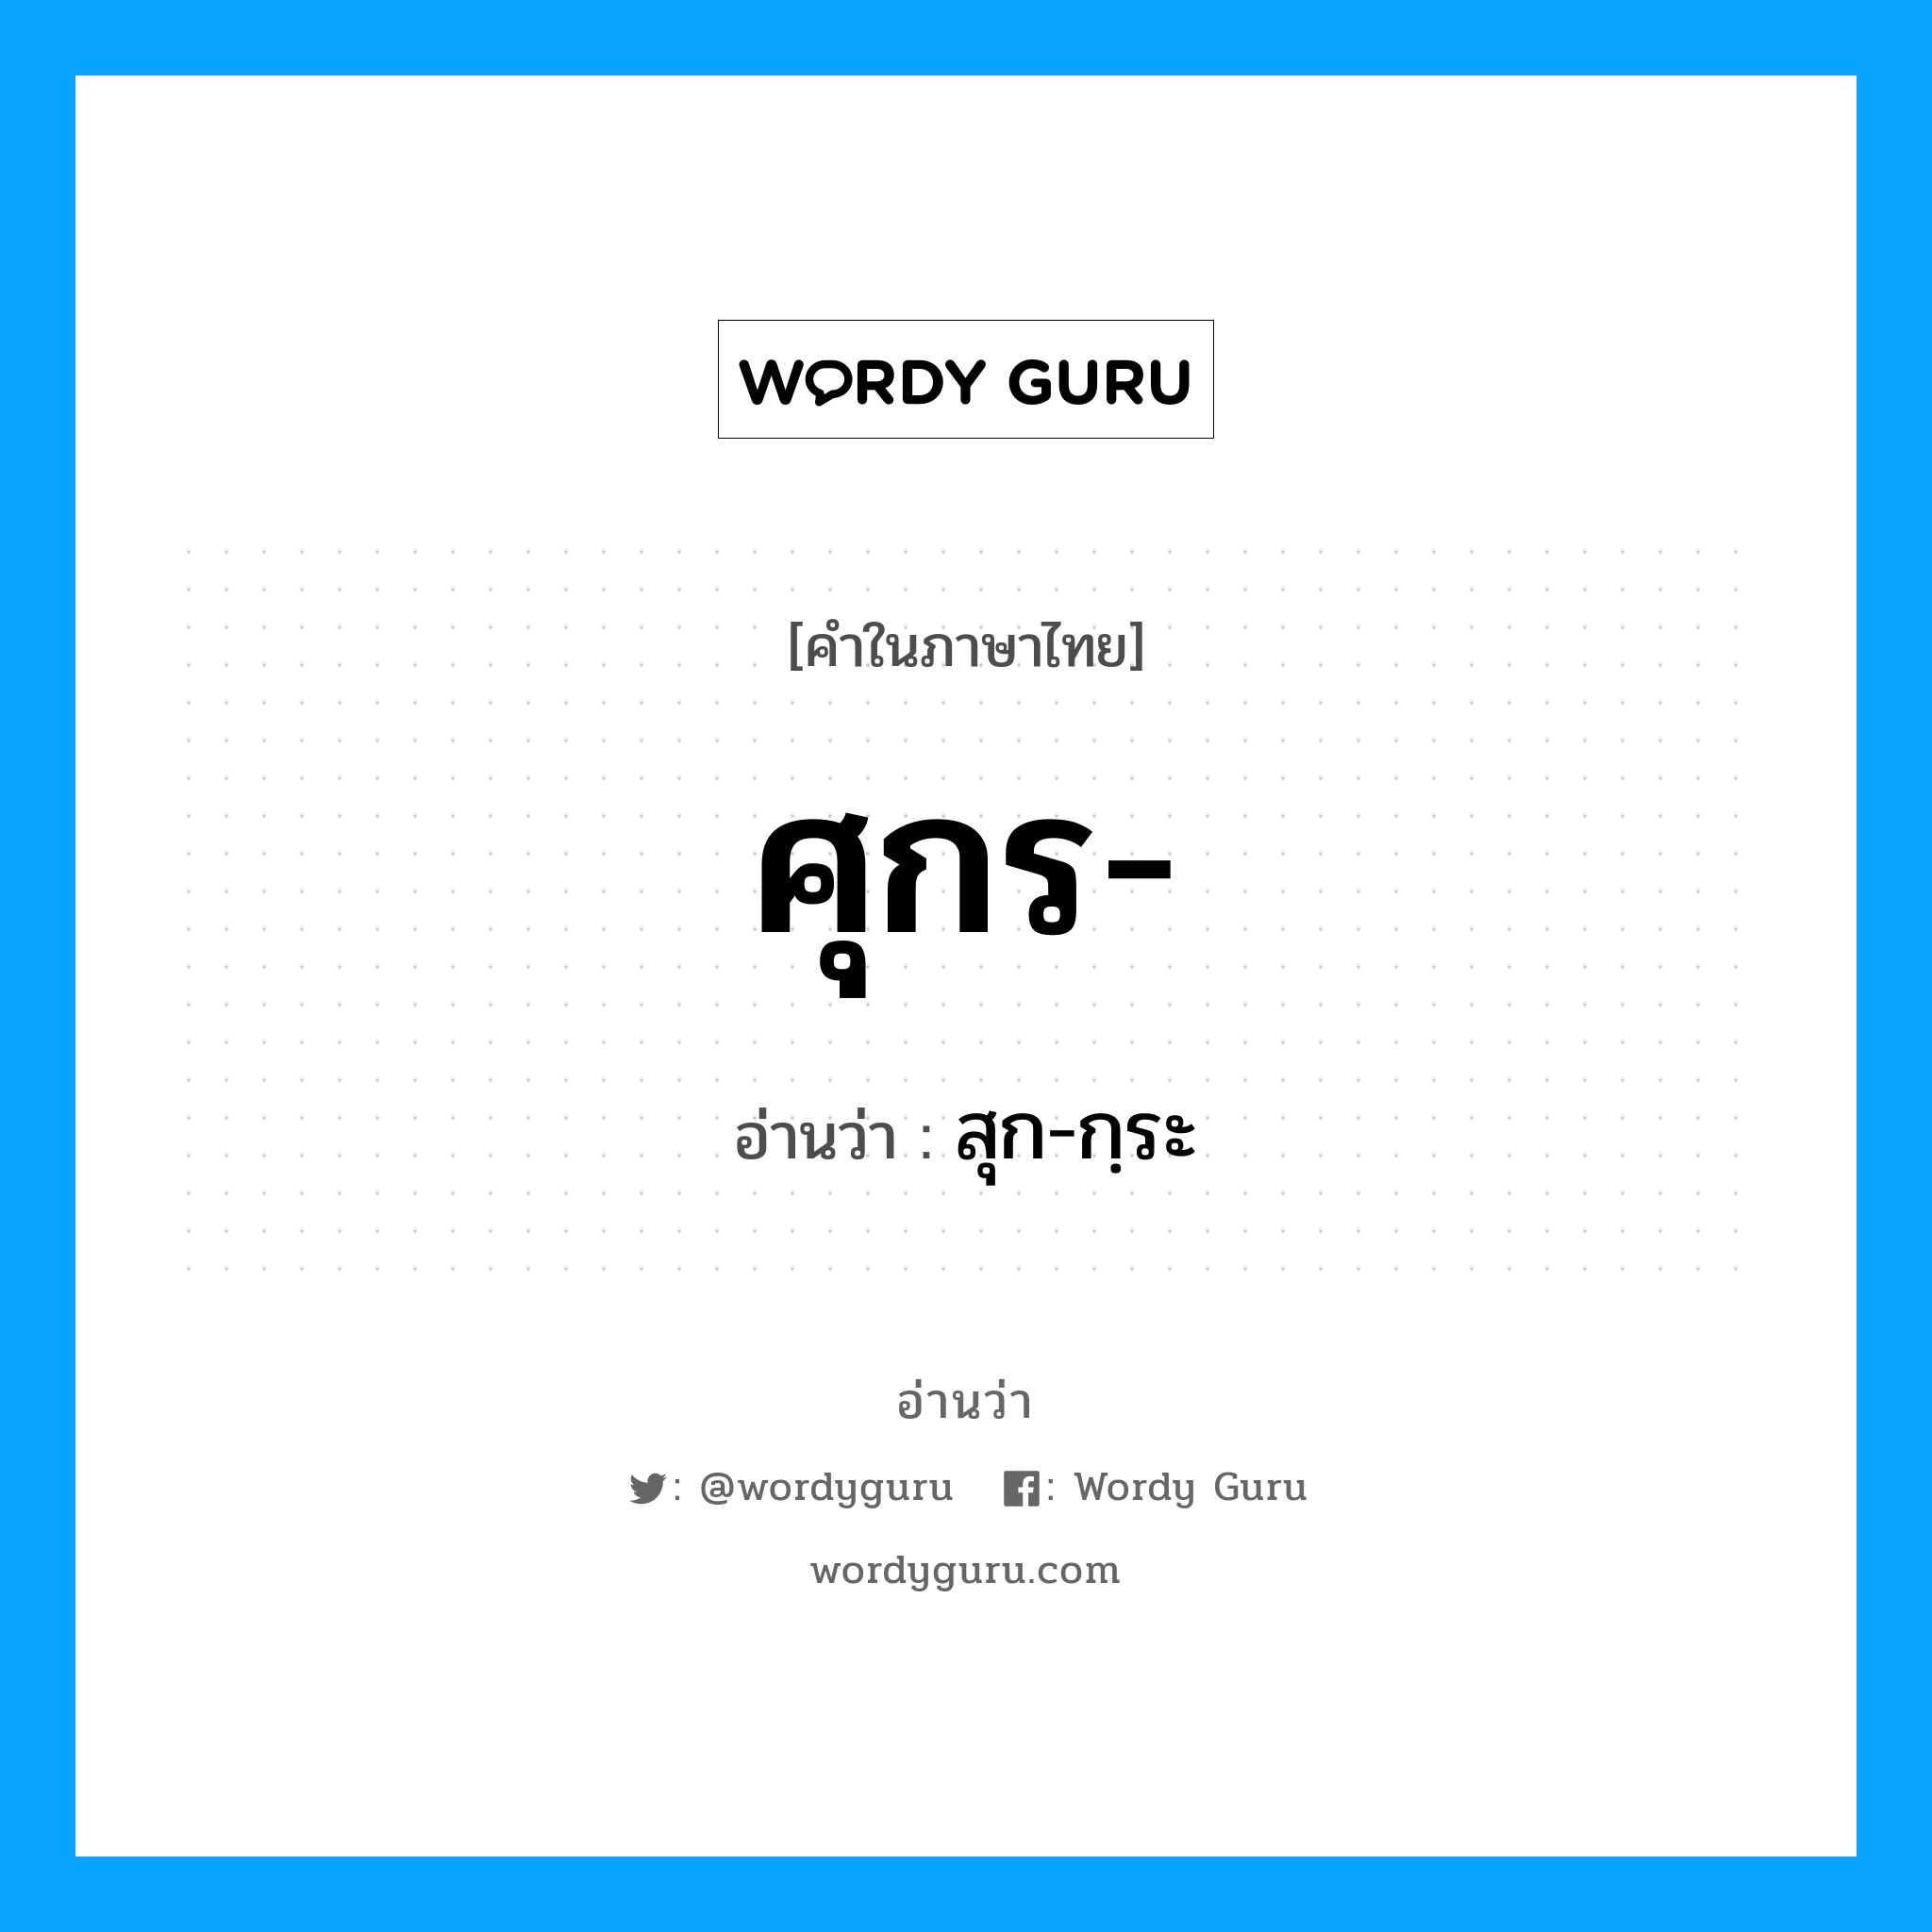 สุก-กฺระ เป็นคำอ่านของคำไหน?, คำในภาษาไทย สุก-กฺระ อ่านว่า ศุกร-